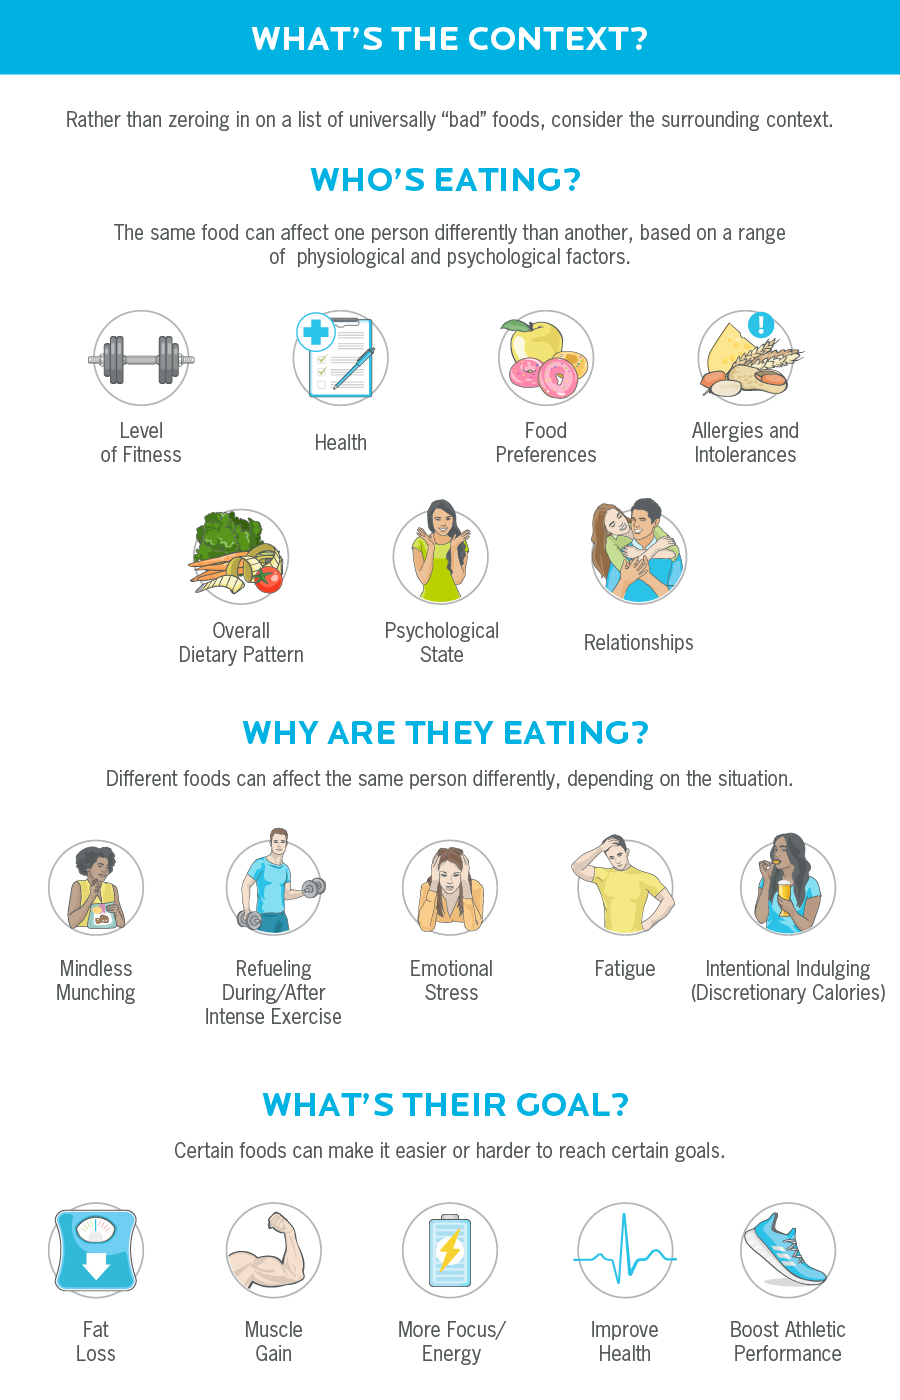 插图显示了选择食物时要考虑的因素，如谁在吃，他们为什么吃，他们的目标是什么。